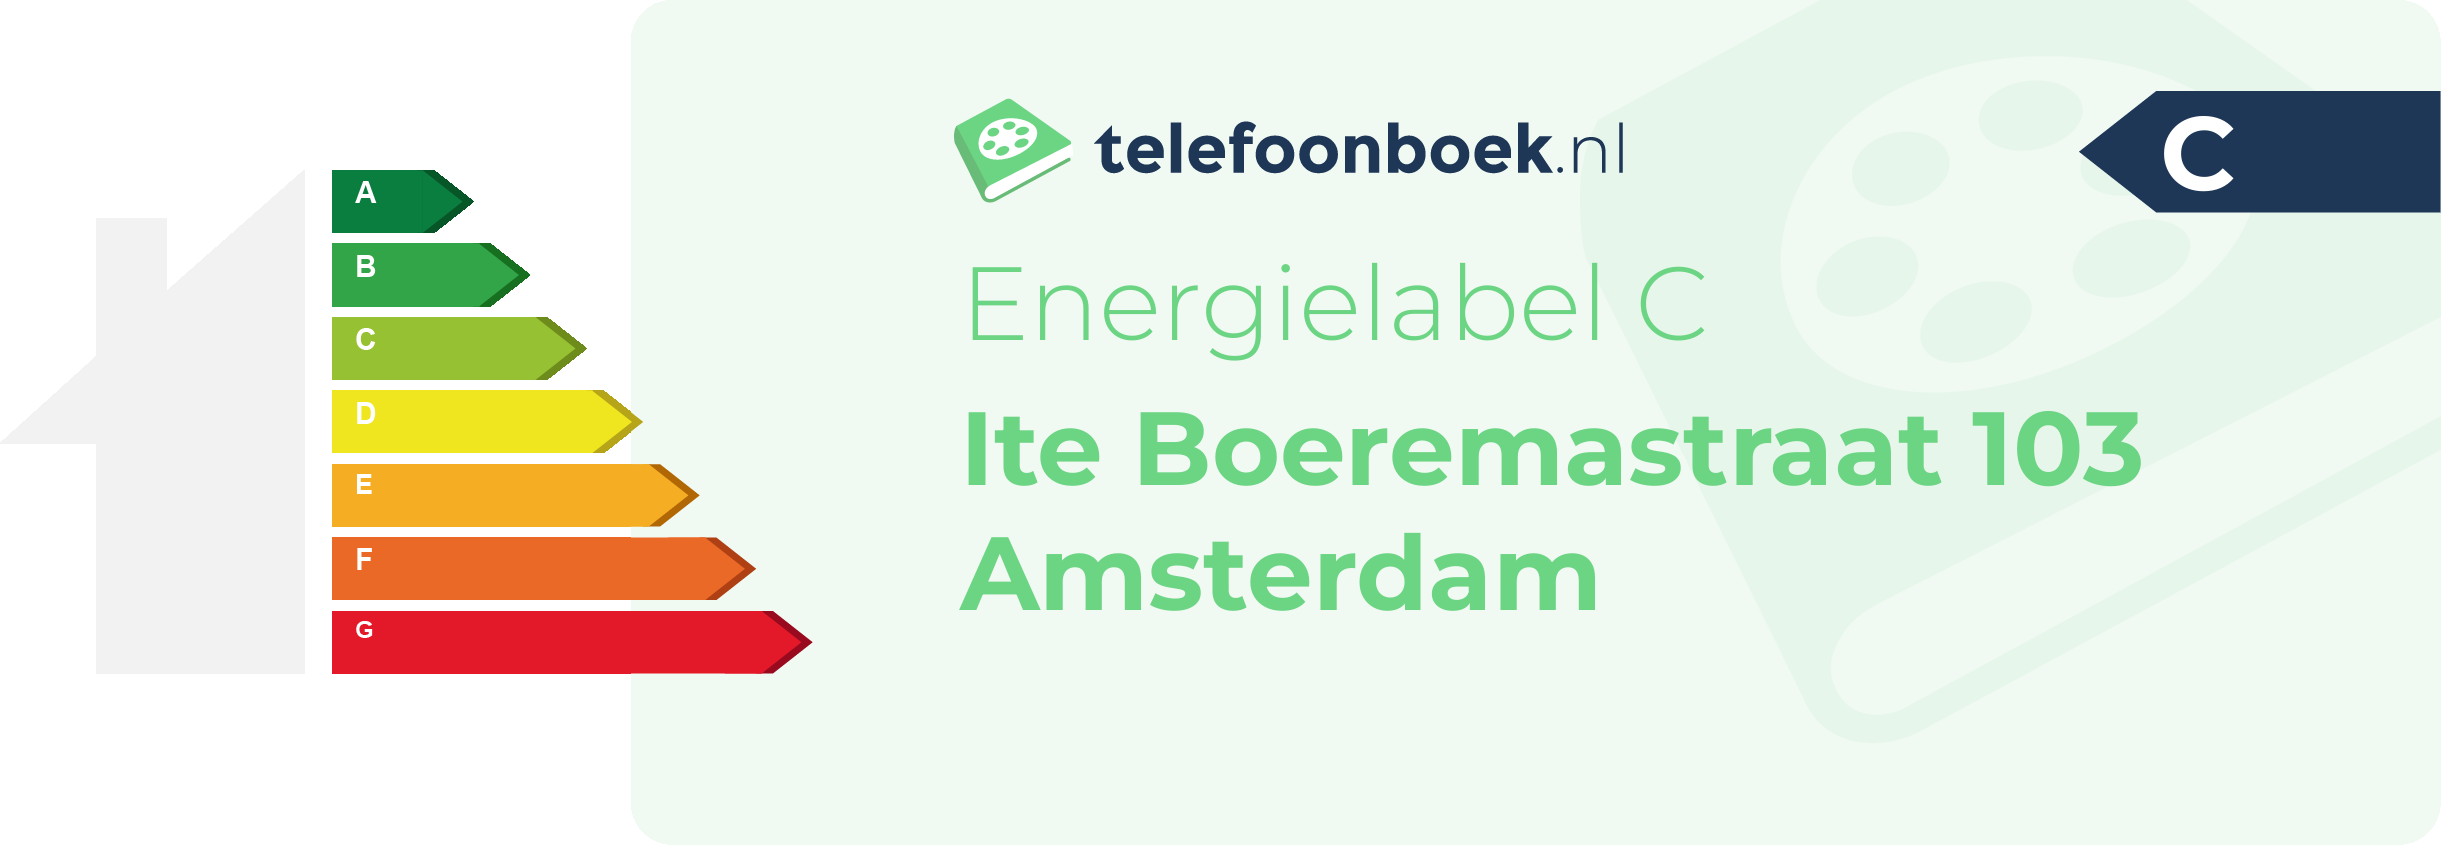 Energielabel Ite Boeremastraat 103 Amsterdam